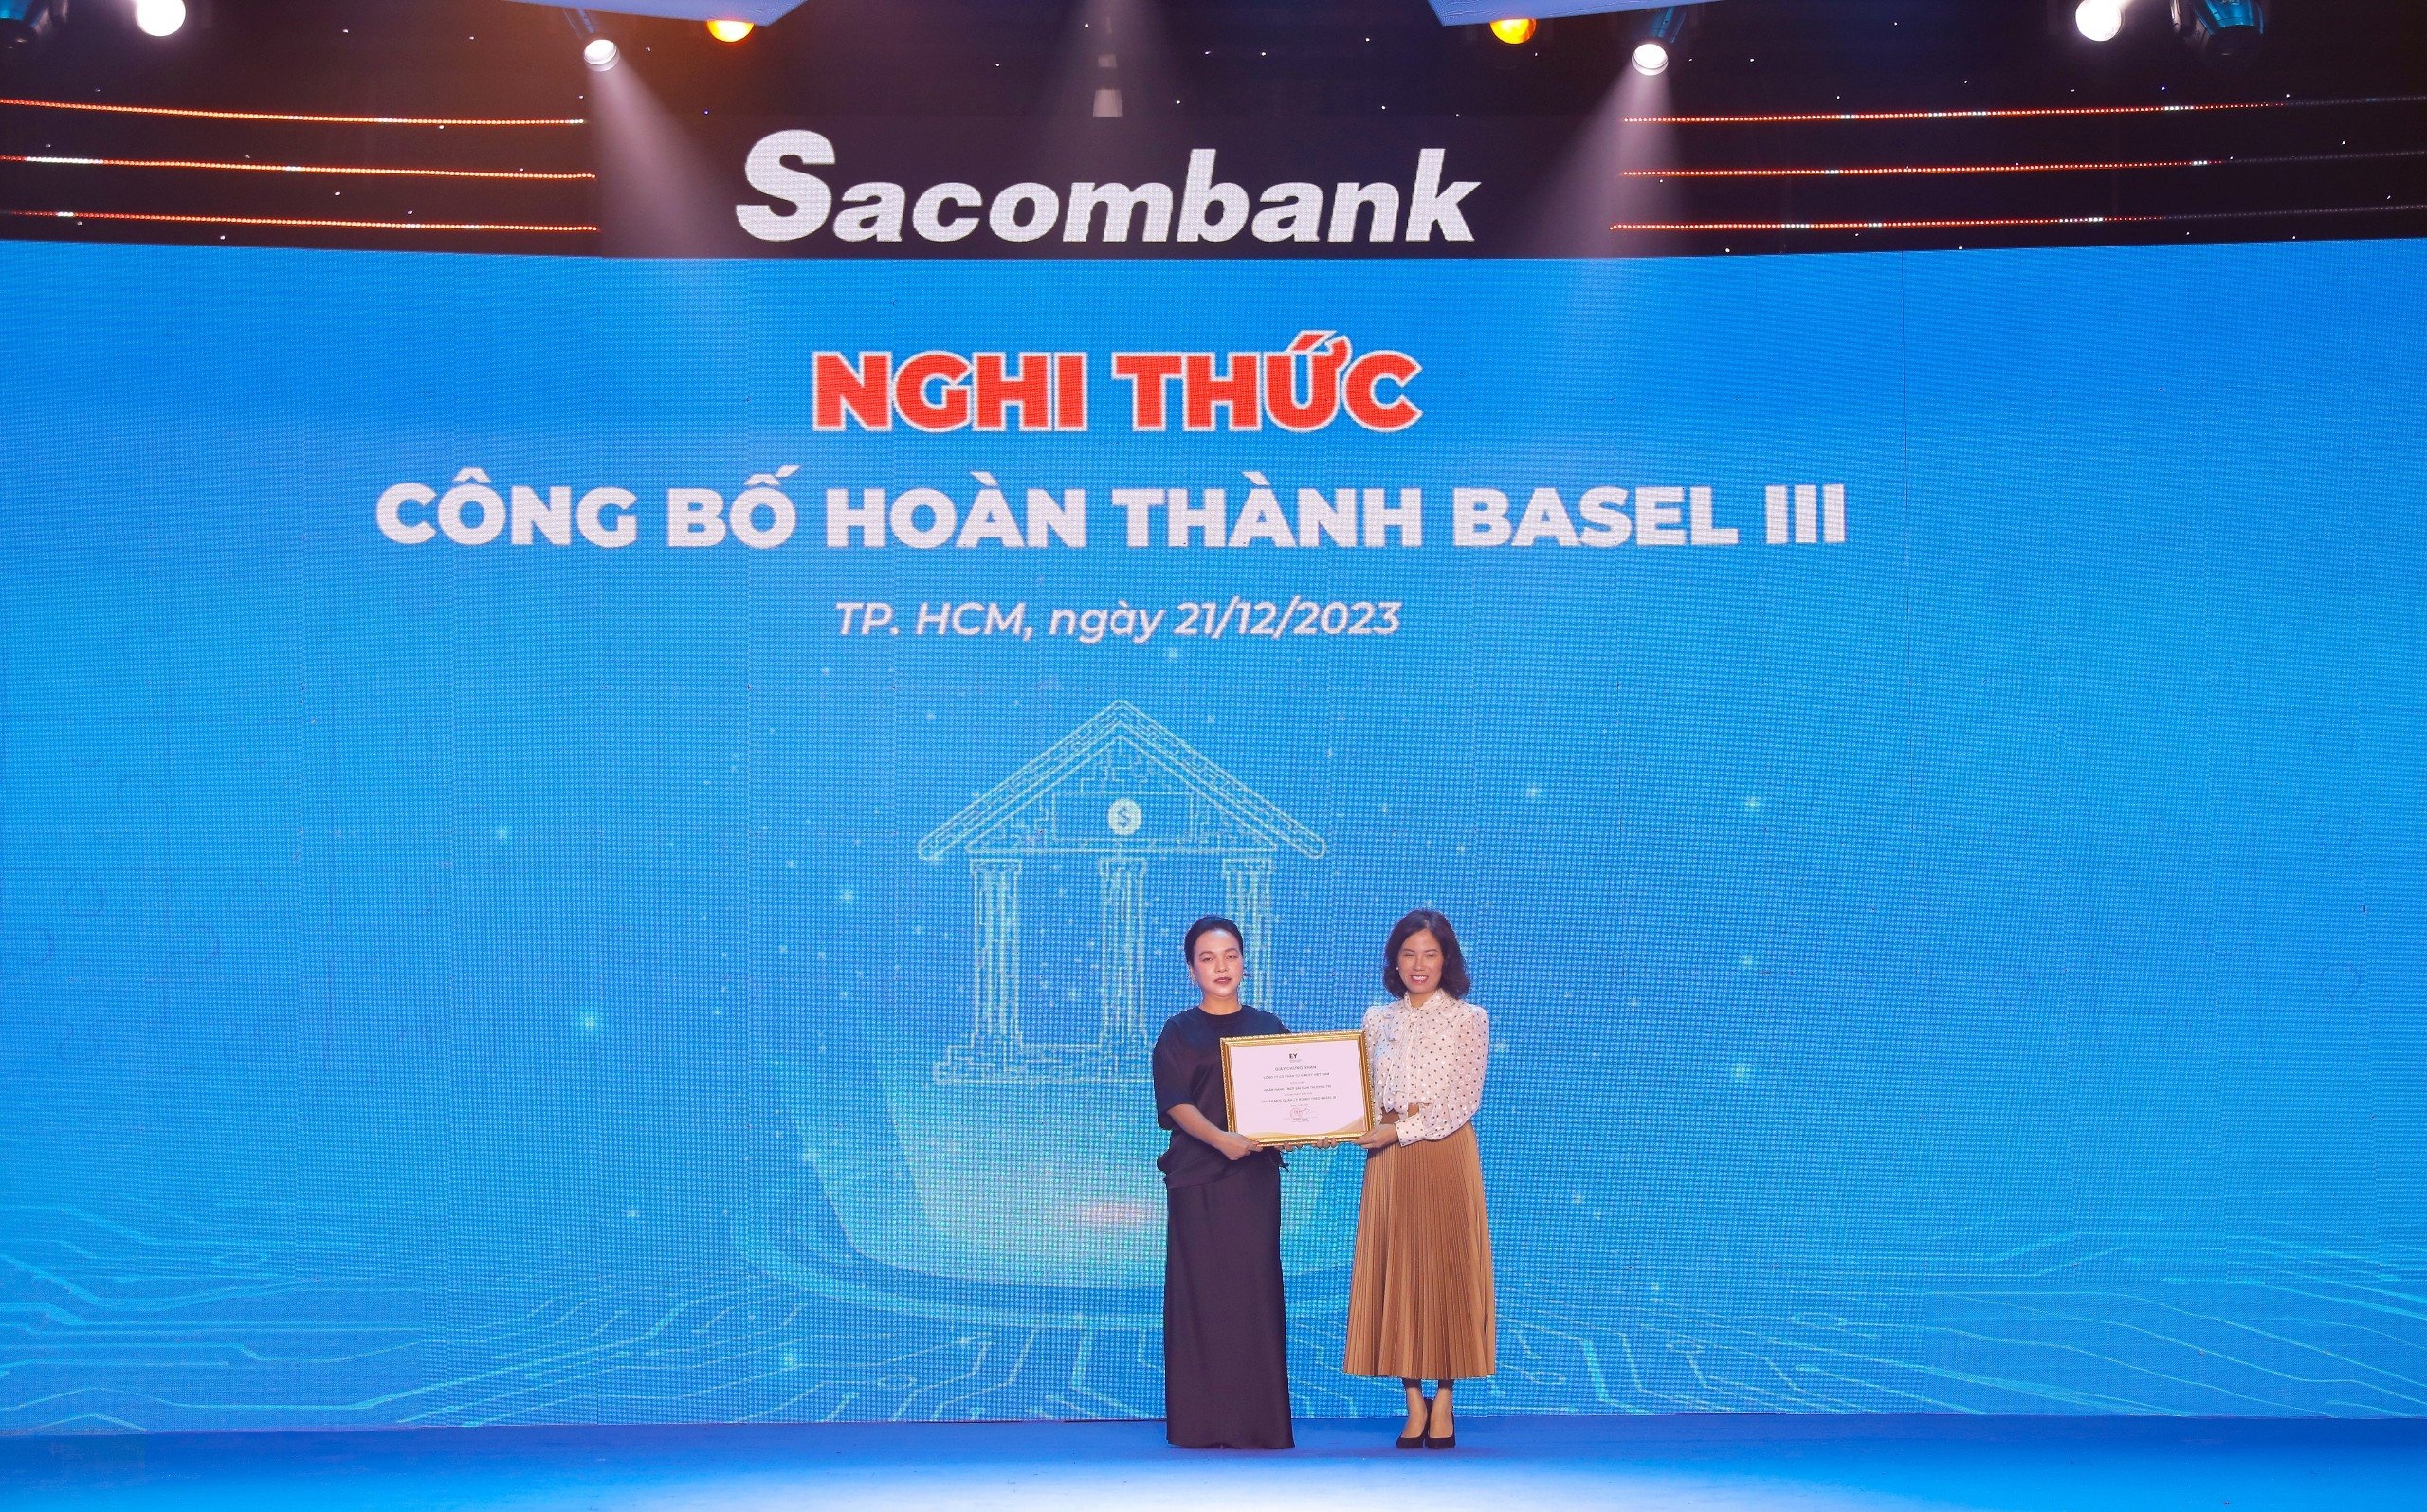 Nhân dịp đón mừng tuổi 32, Sacombank được Công ty cổ phần tư vấn EY Việt Nam trao chứng nhận hoàn thành triển khai chuẩn mực quản lý rủi ro theo Basel III, trở thành Ngân hàng tiếp theo tại Việt Nam áp dụng thành công bộ tiêu chuẩn quản lý rủi ro ở cấp độ cao này